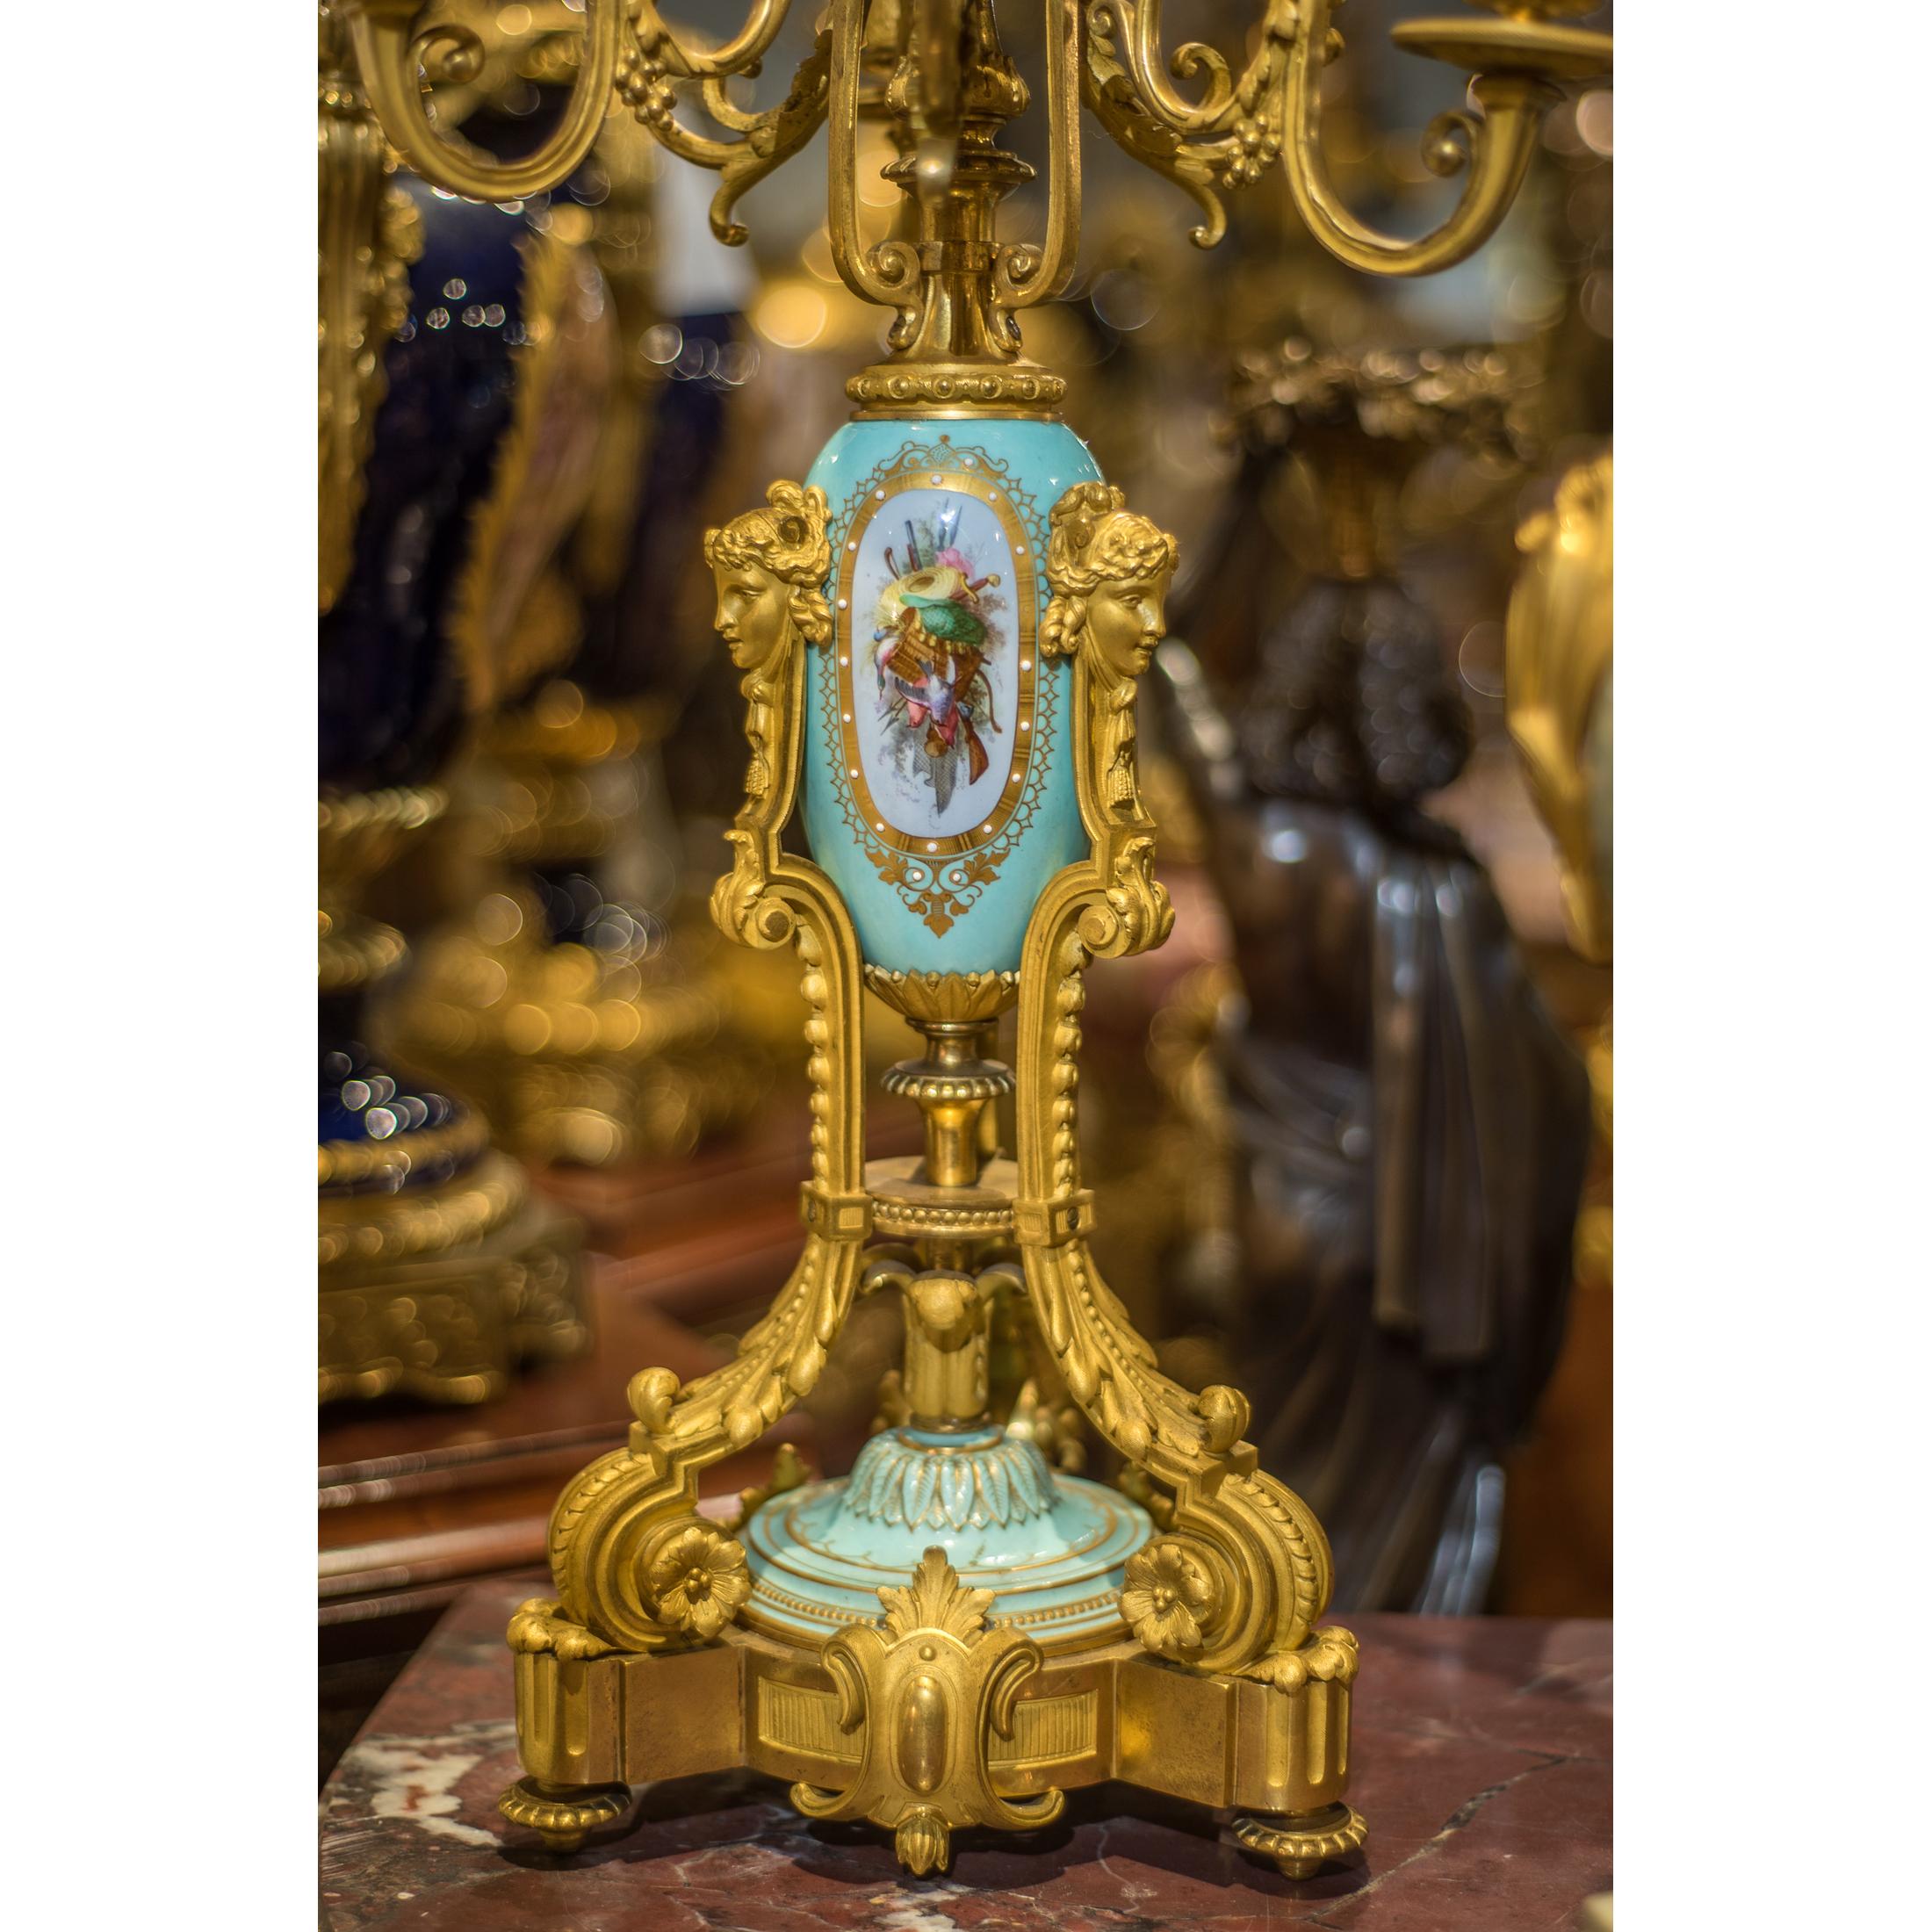 Eine raffinierte Napoleon III Sèvres Porzellan montiert ormolu Uhr Set von Grohé Paris mit Widder Maske montiert ovoid Uhr Gehäuse von zwei Putten Begriffe auf einem geformten Sockel mit floralen Porzellanplatten gesetzt unterstützt. Die Werke sind